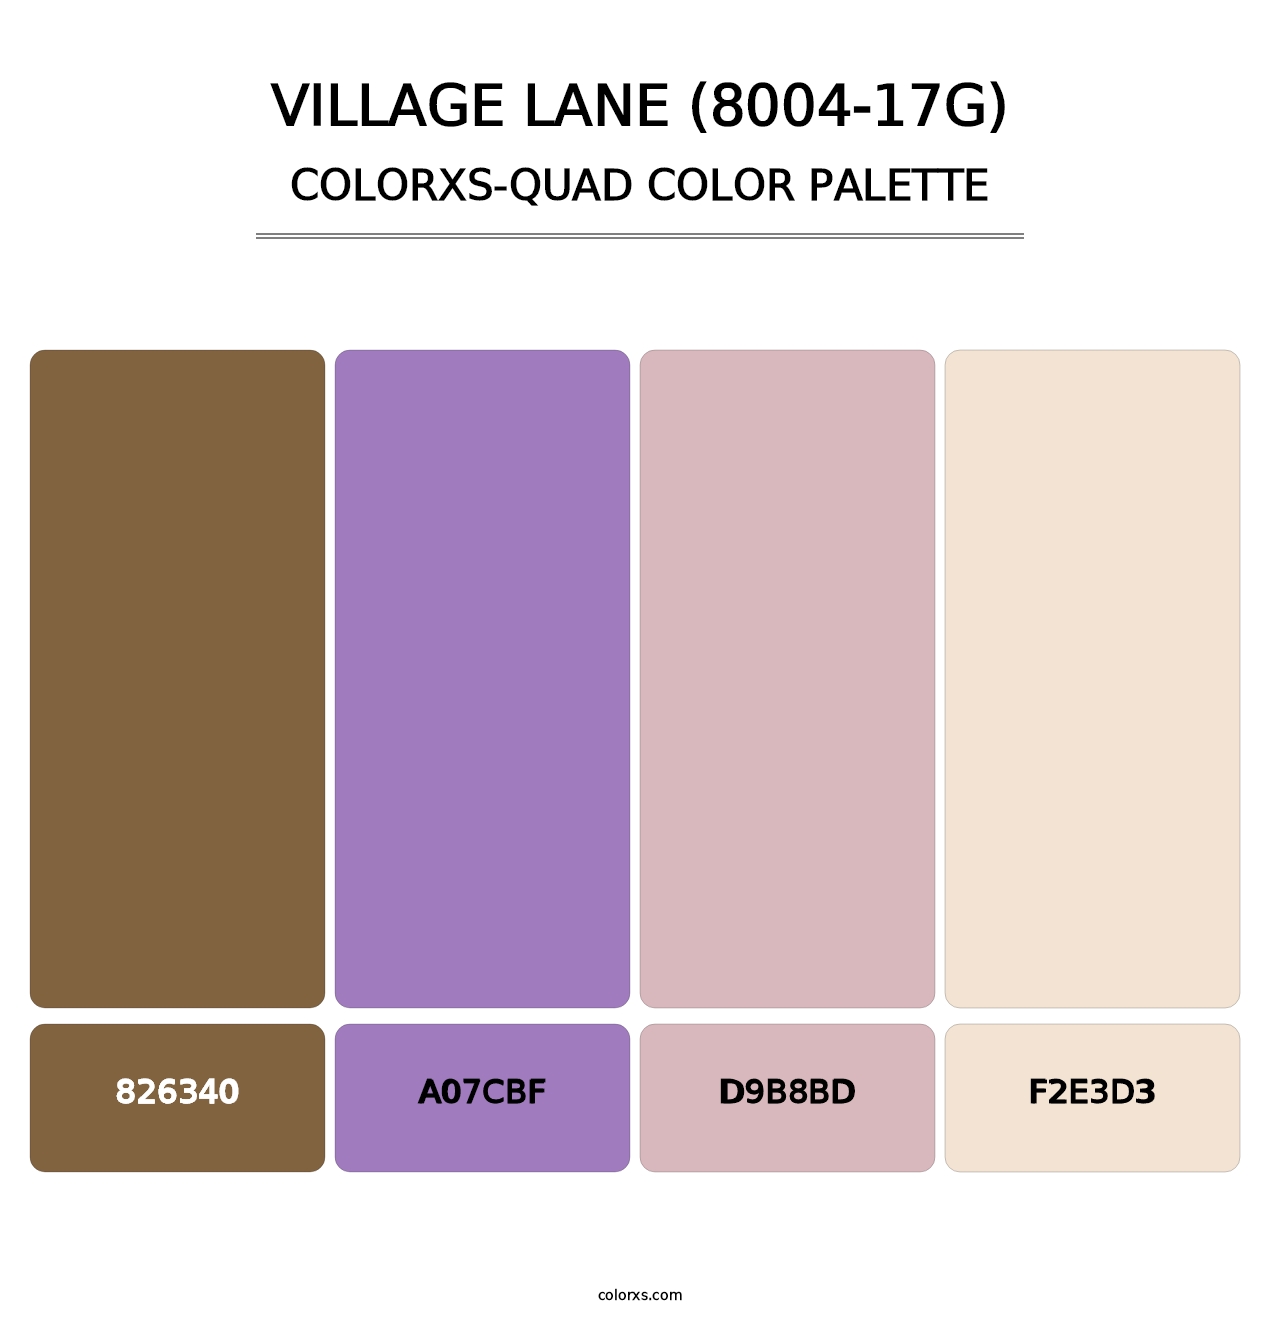 Village Lane (8004-17G) - Colorxs Quad Palette